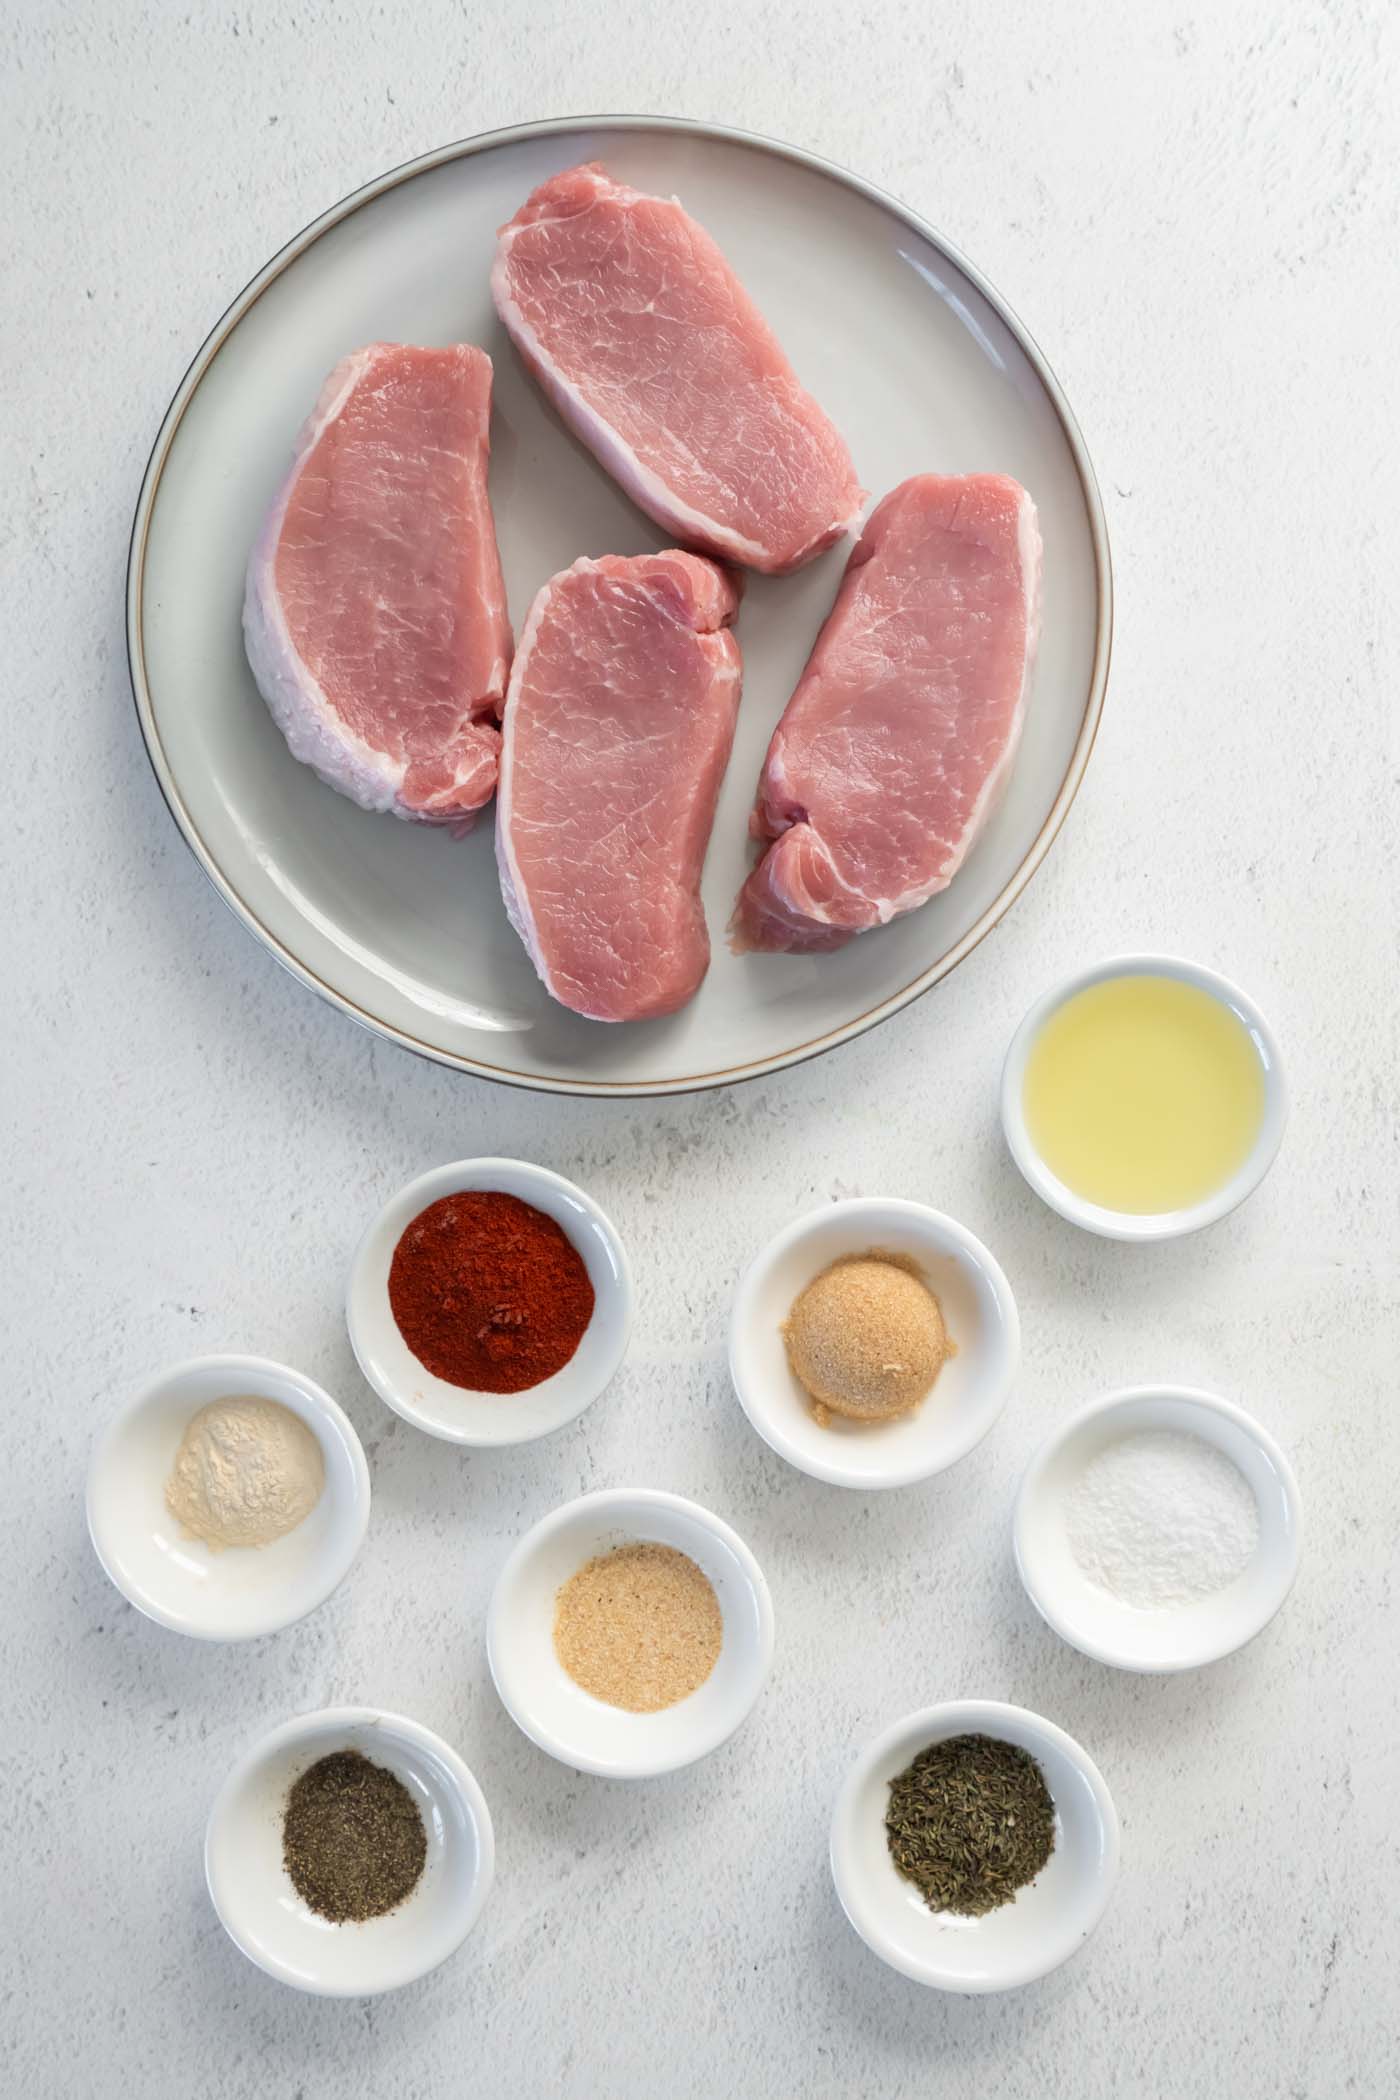 Ingredients for air fryer pork chops recipe.